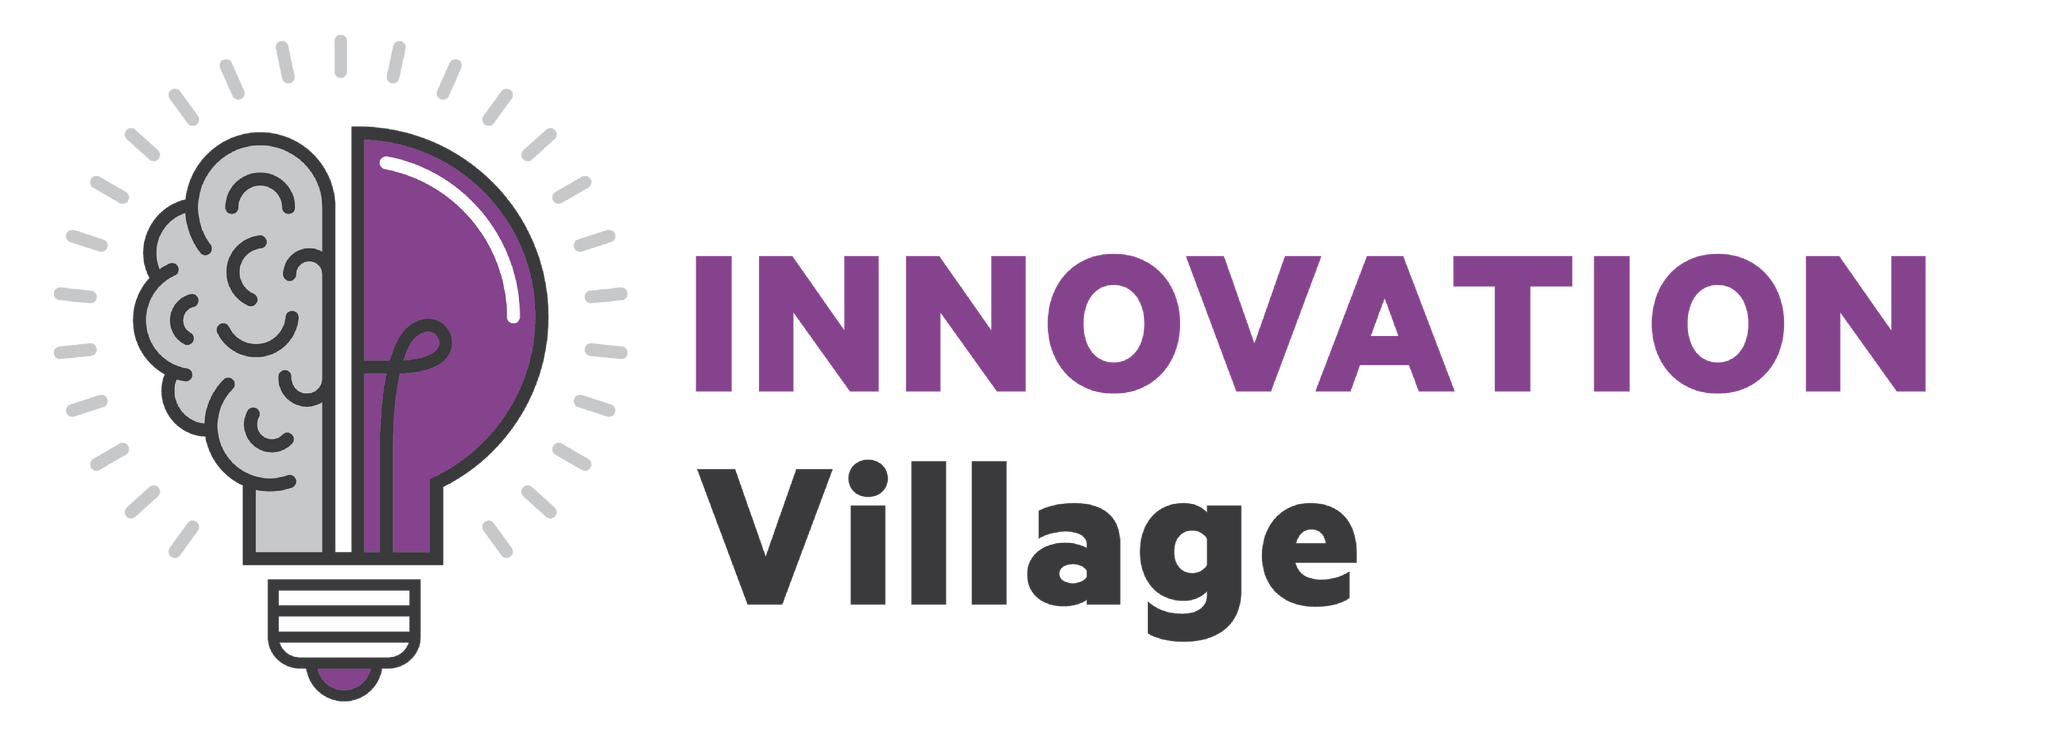 bett_innovationvillage_logo_fin.png